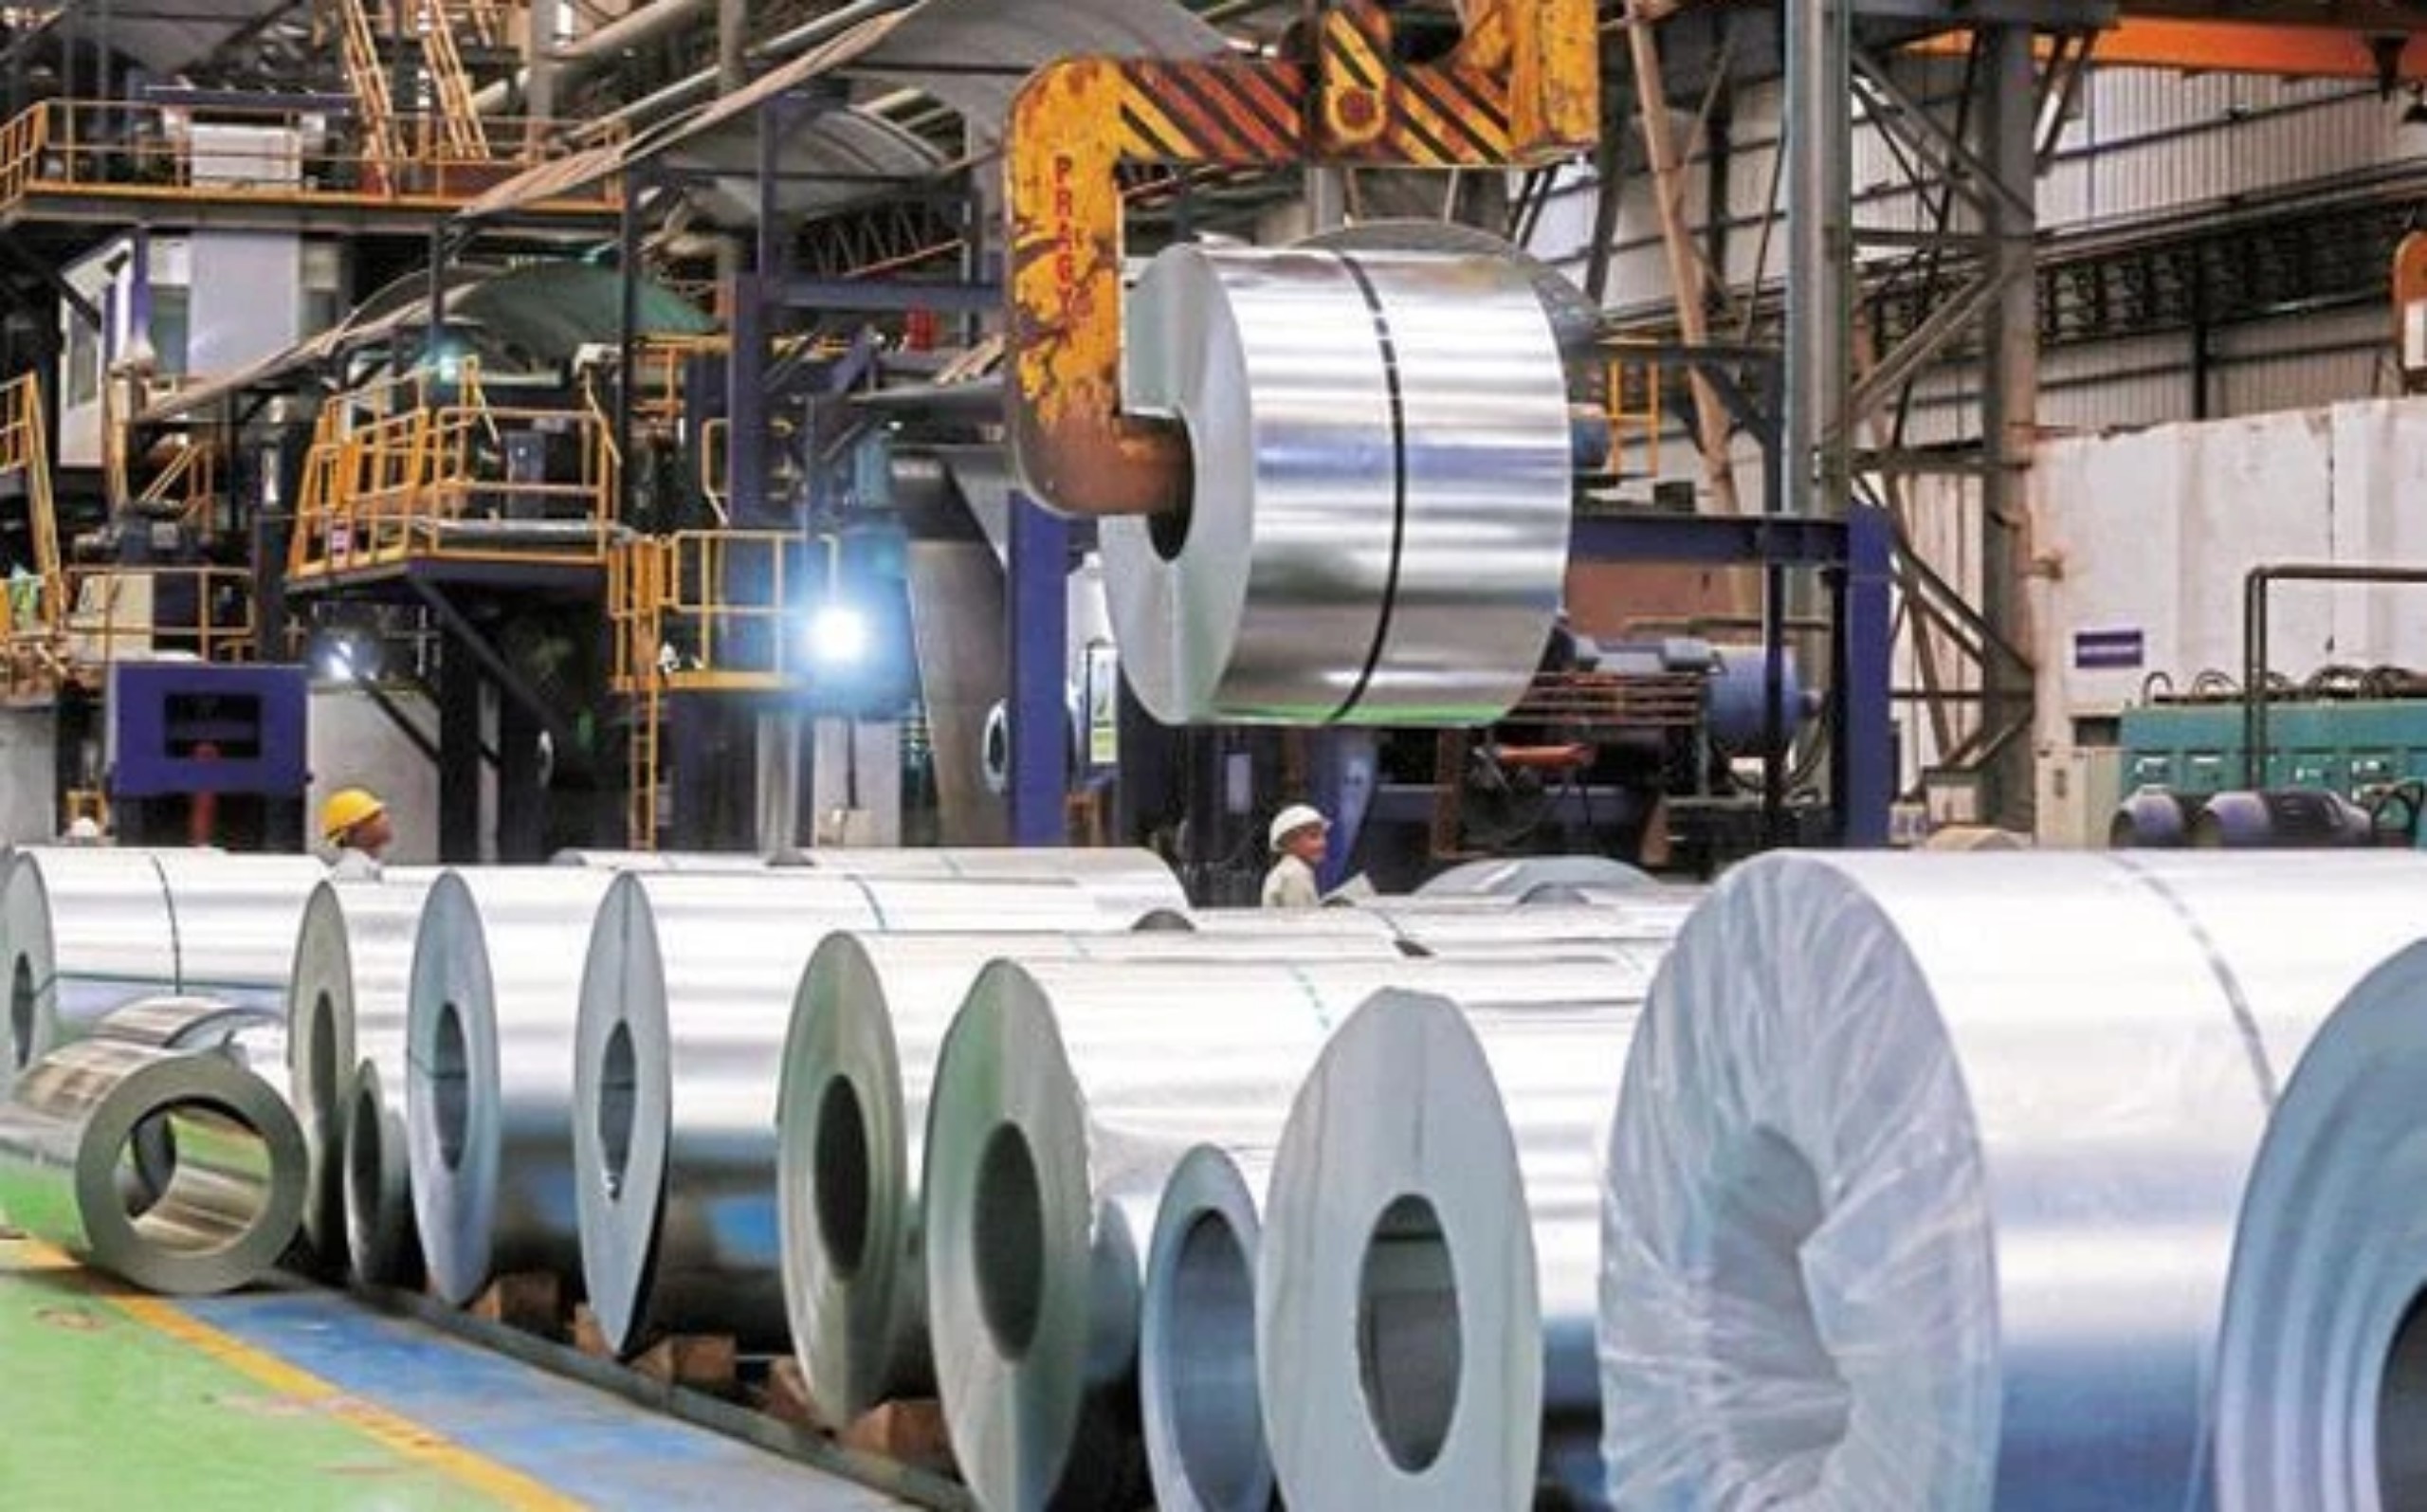 Galvanized steel manufacturer in Vietnam